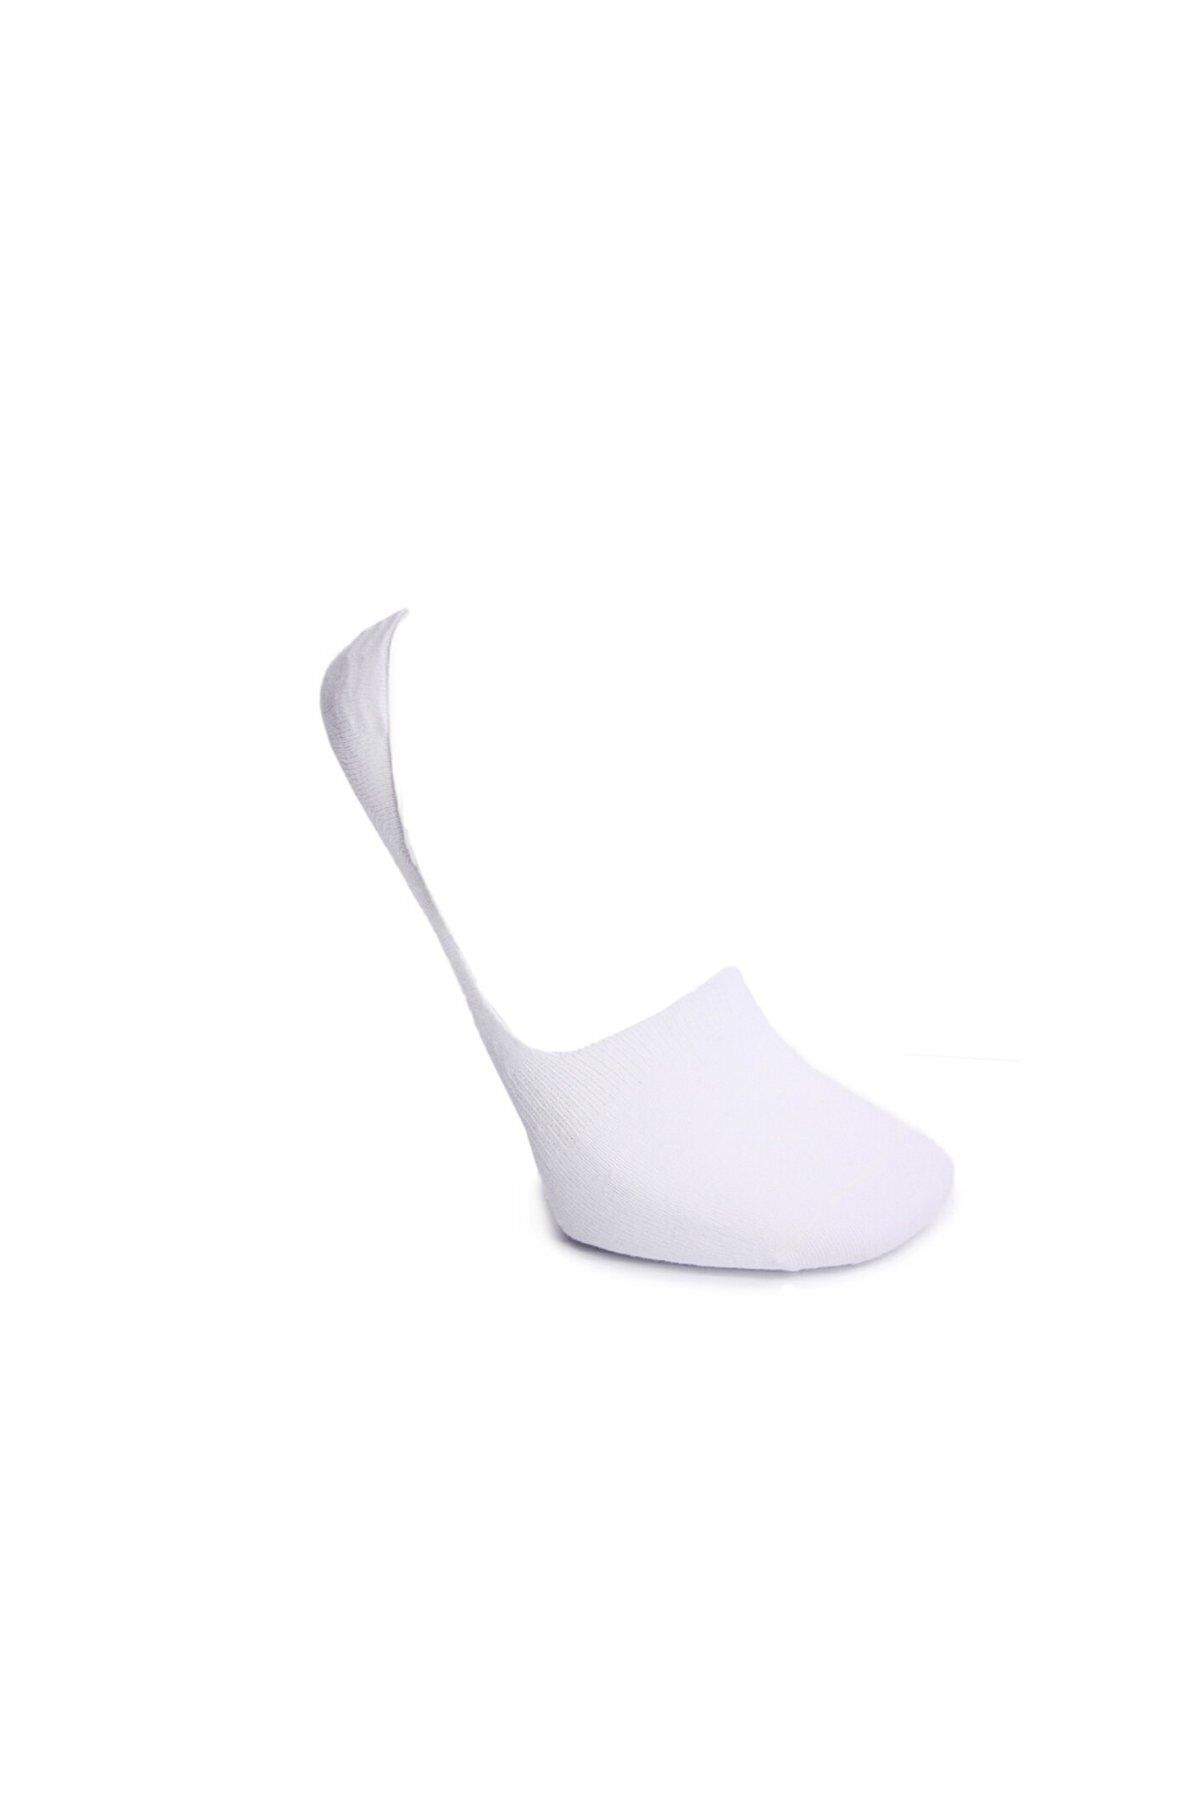 hummel Unisex Mını Low Beyaz Çorap 970109-9001